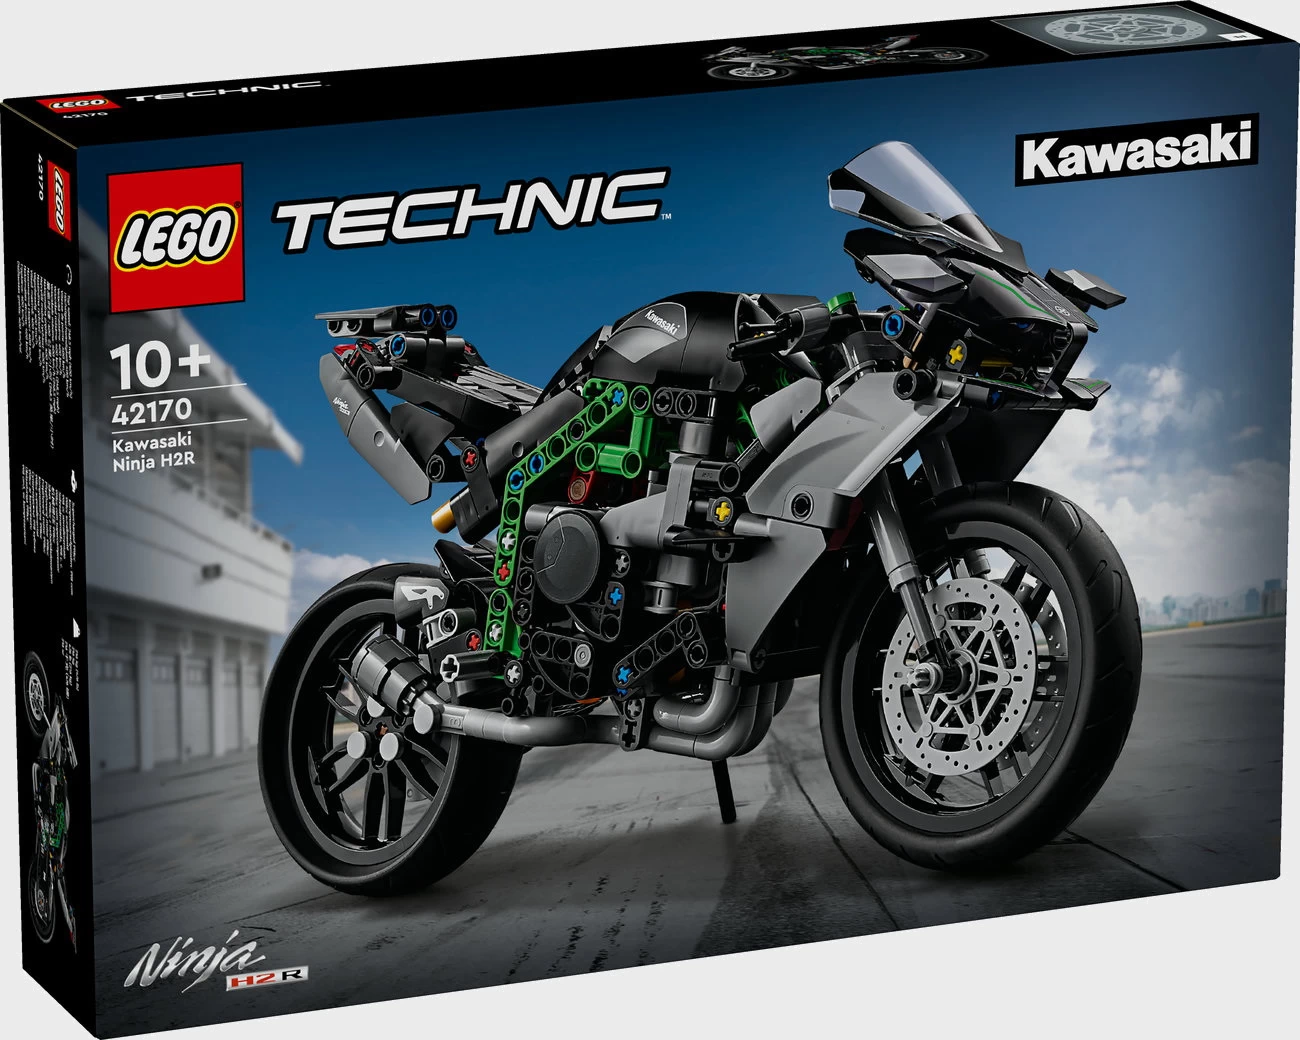 LEGO Technic 42170 - Kawasaki Ninja H2R Motorrad